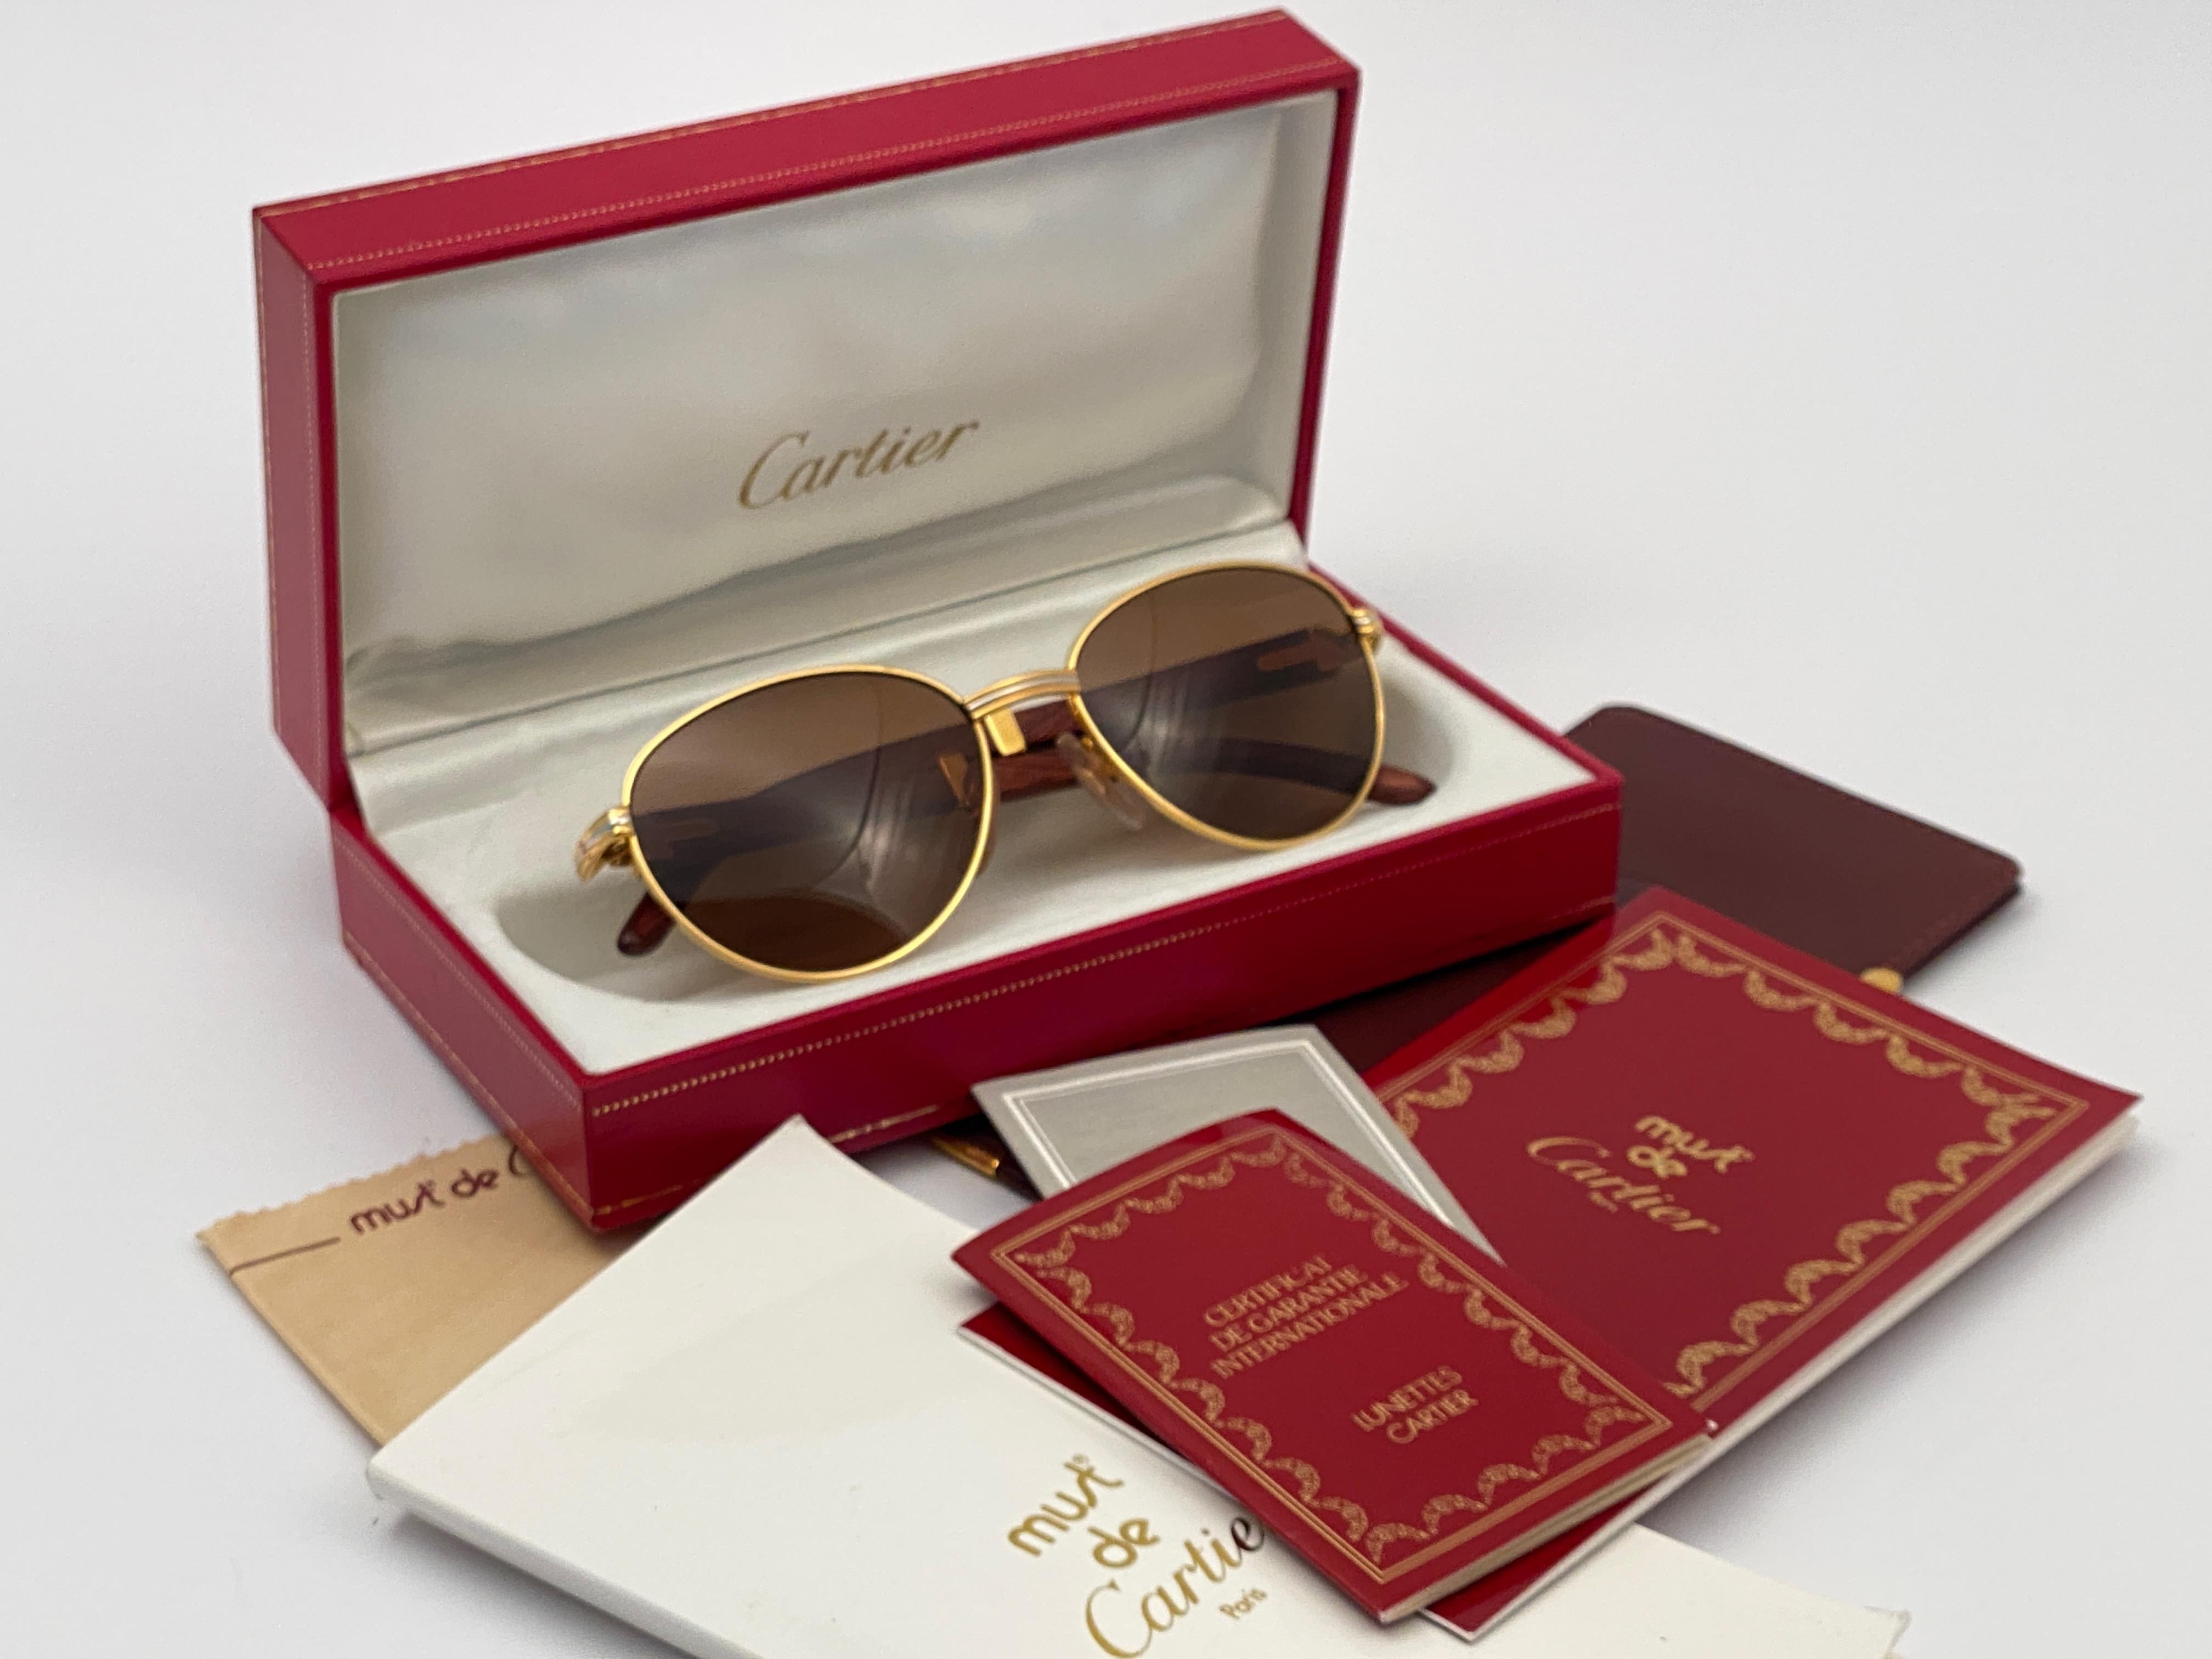 New 1990 Cartier Full Set Auteuil Hardwood Sunglasses avec de nouvelles lentilles solides brun miel (protection contre les UV). 
Le cadre est composé d'un recto et d'un verso en or jaune et blanc, ainsi que des célèbres branches en bois et or. 
Un